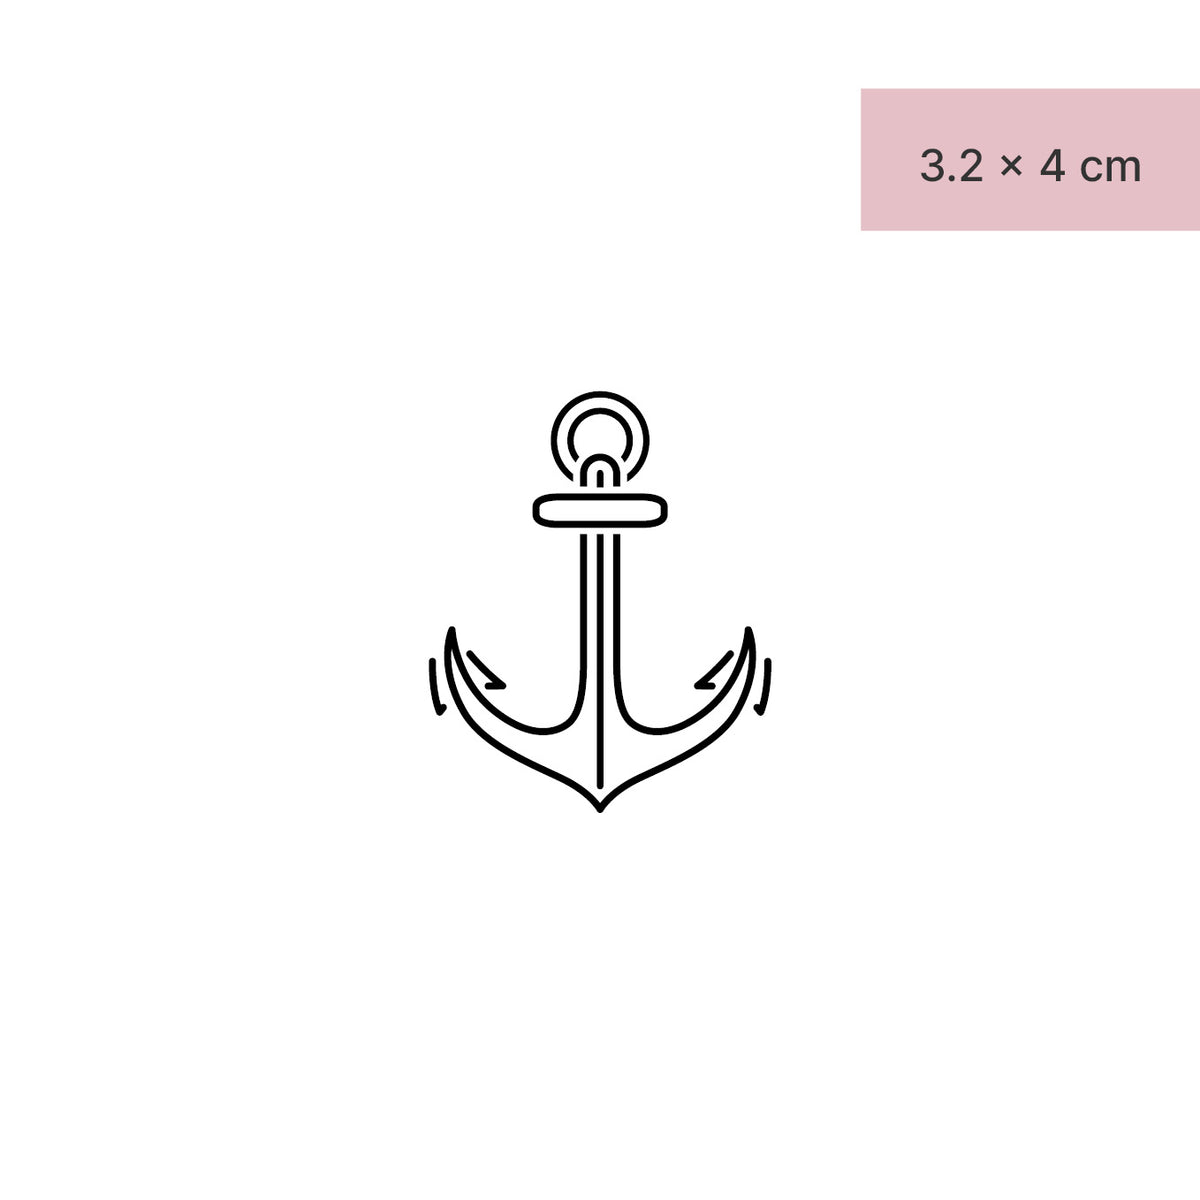 Anchor of a ship